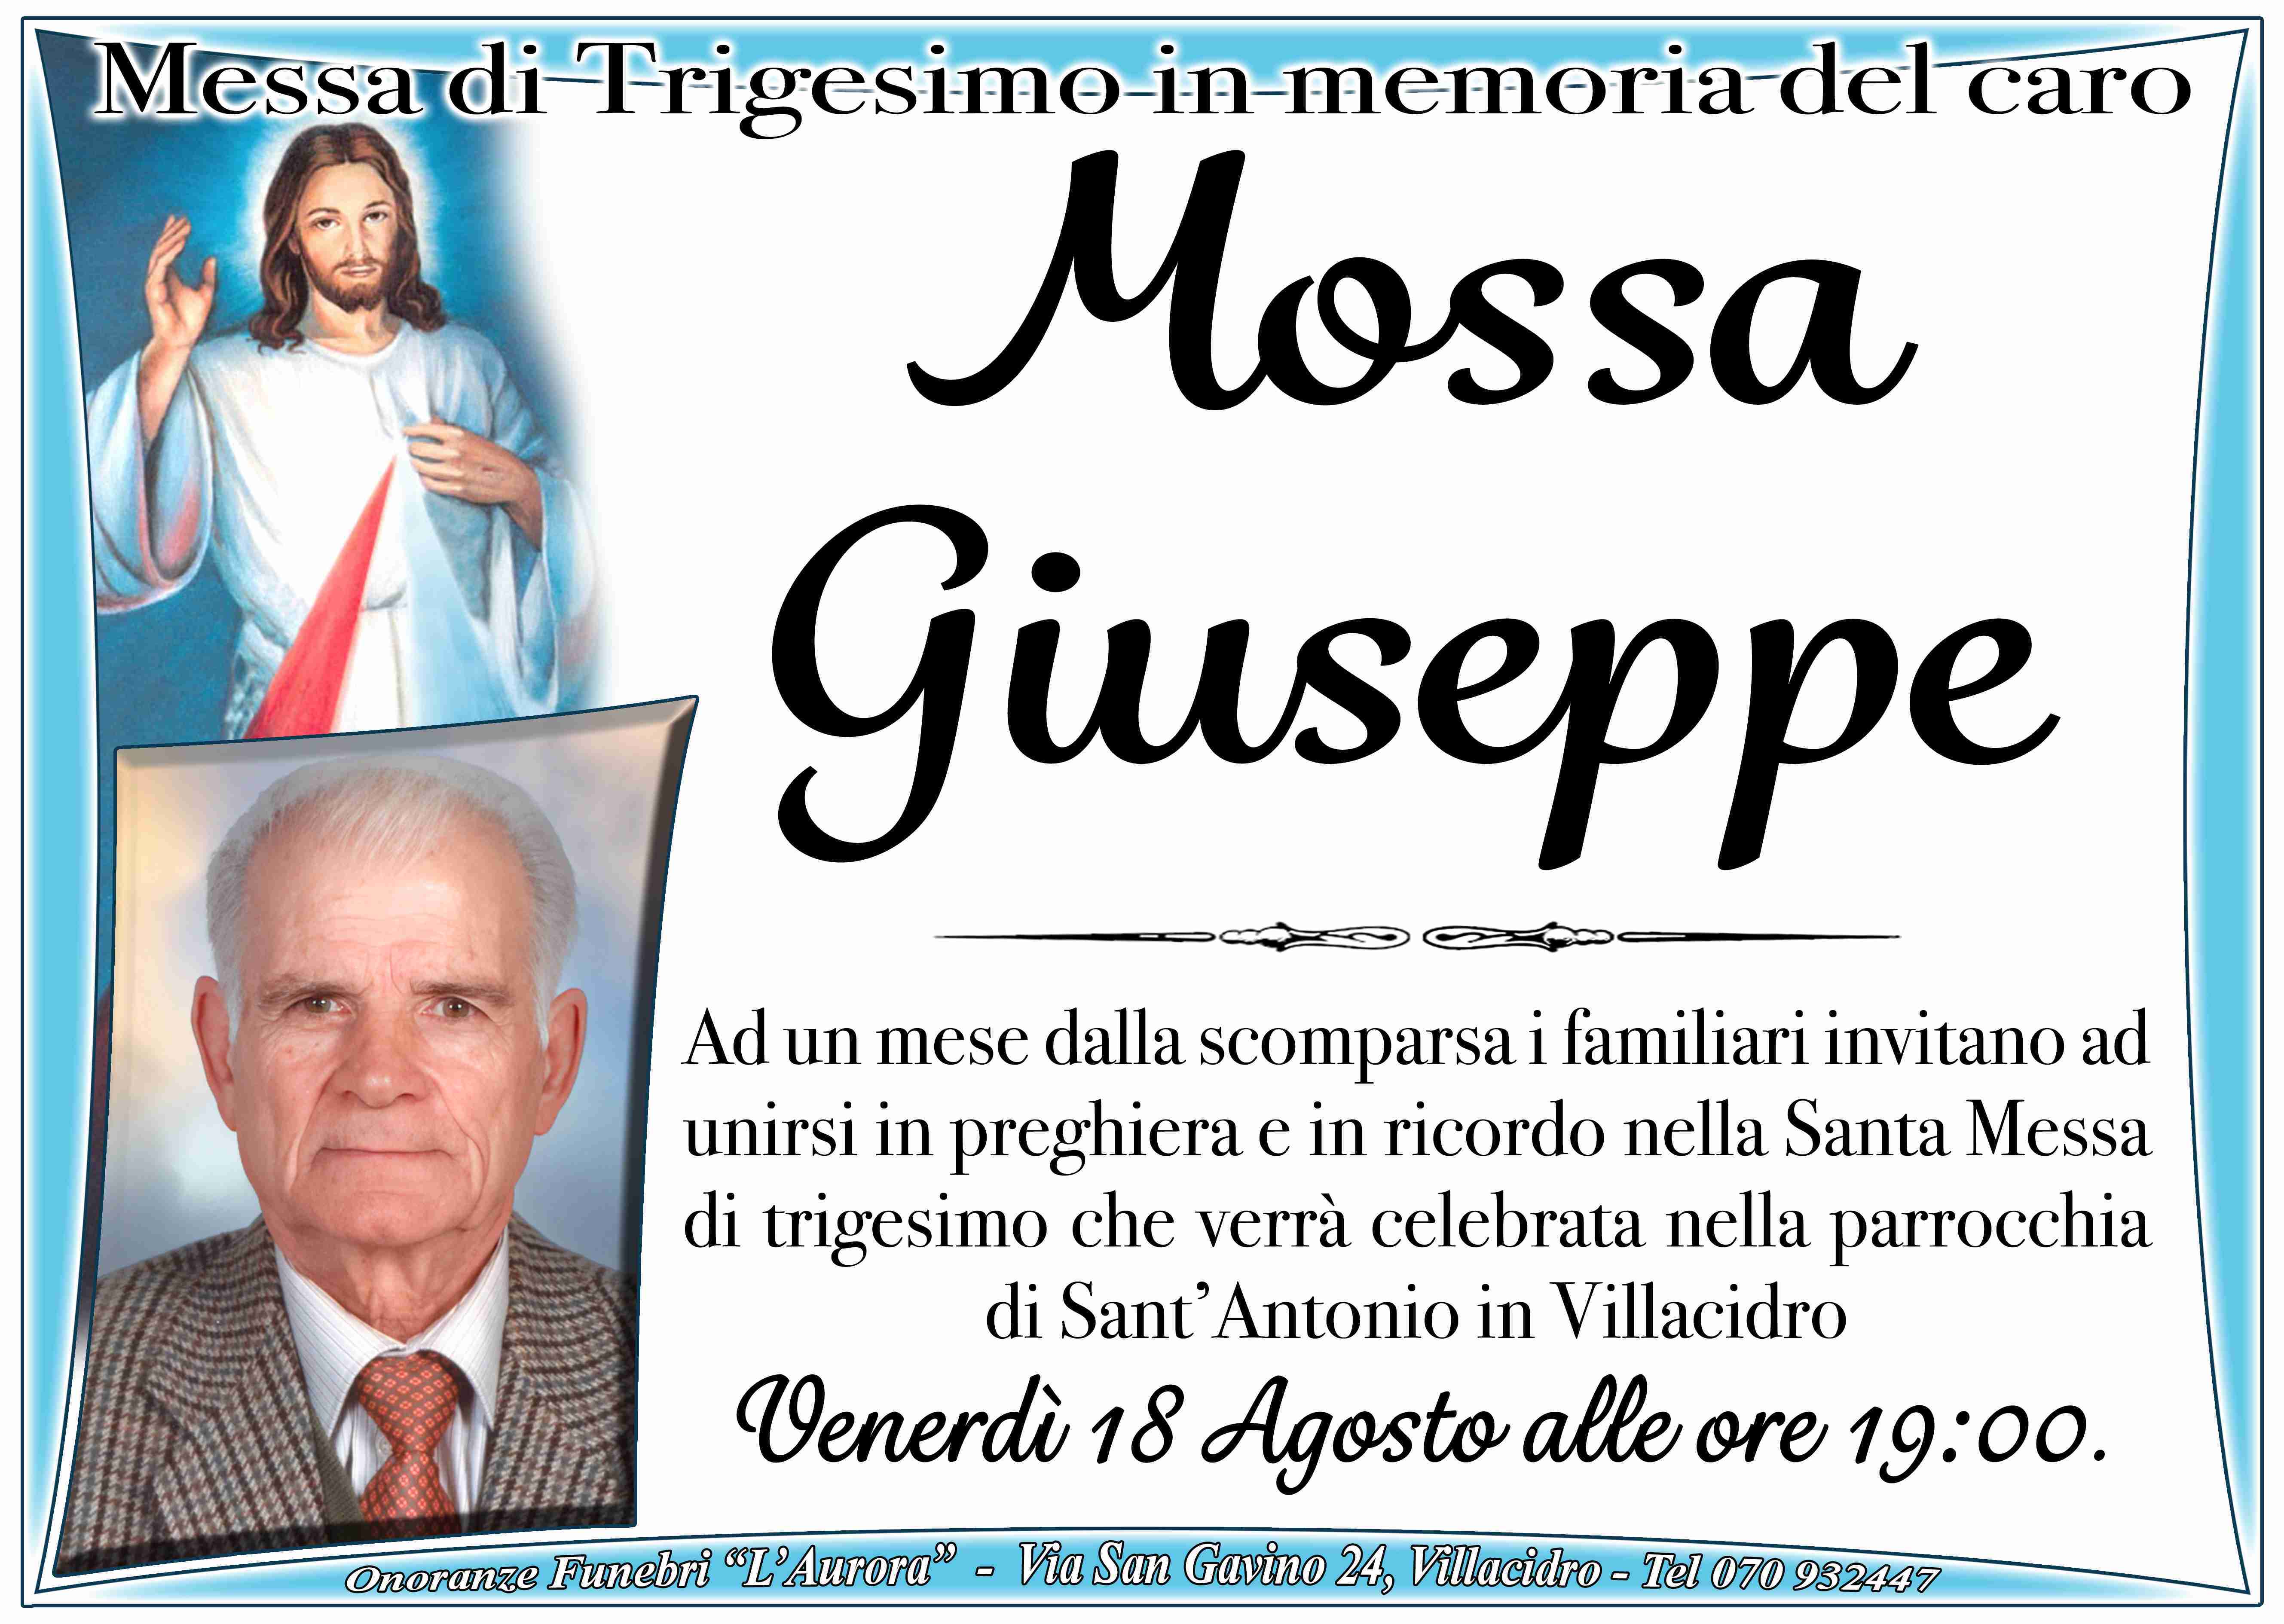 Giuseppe Mossa